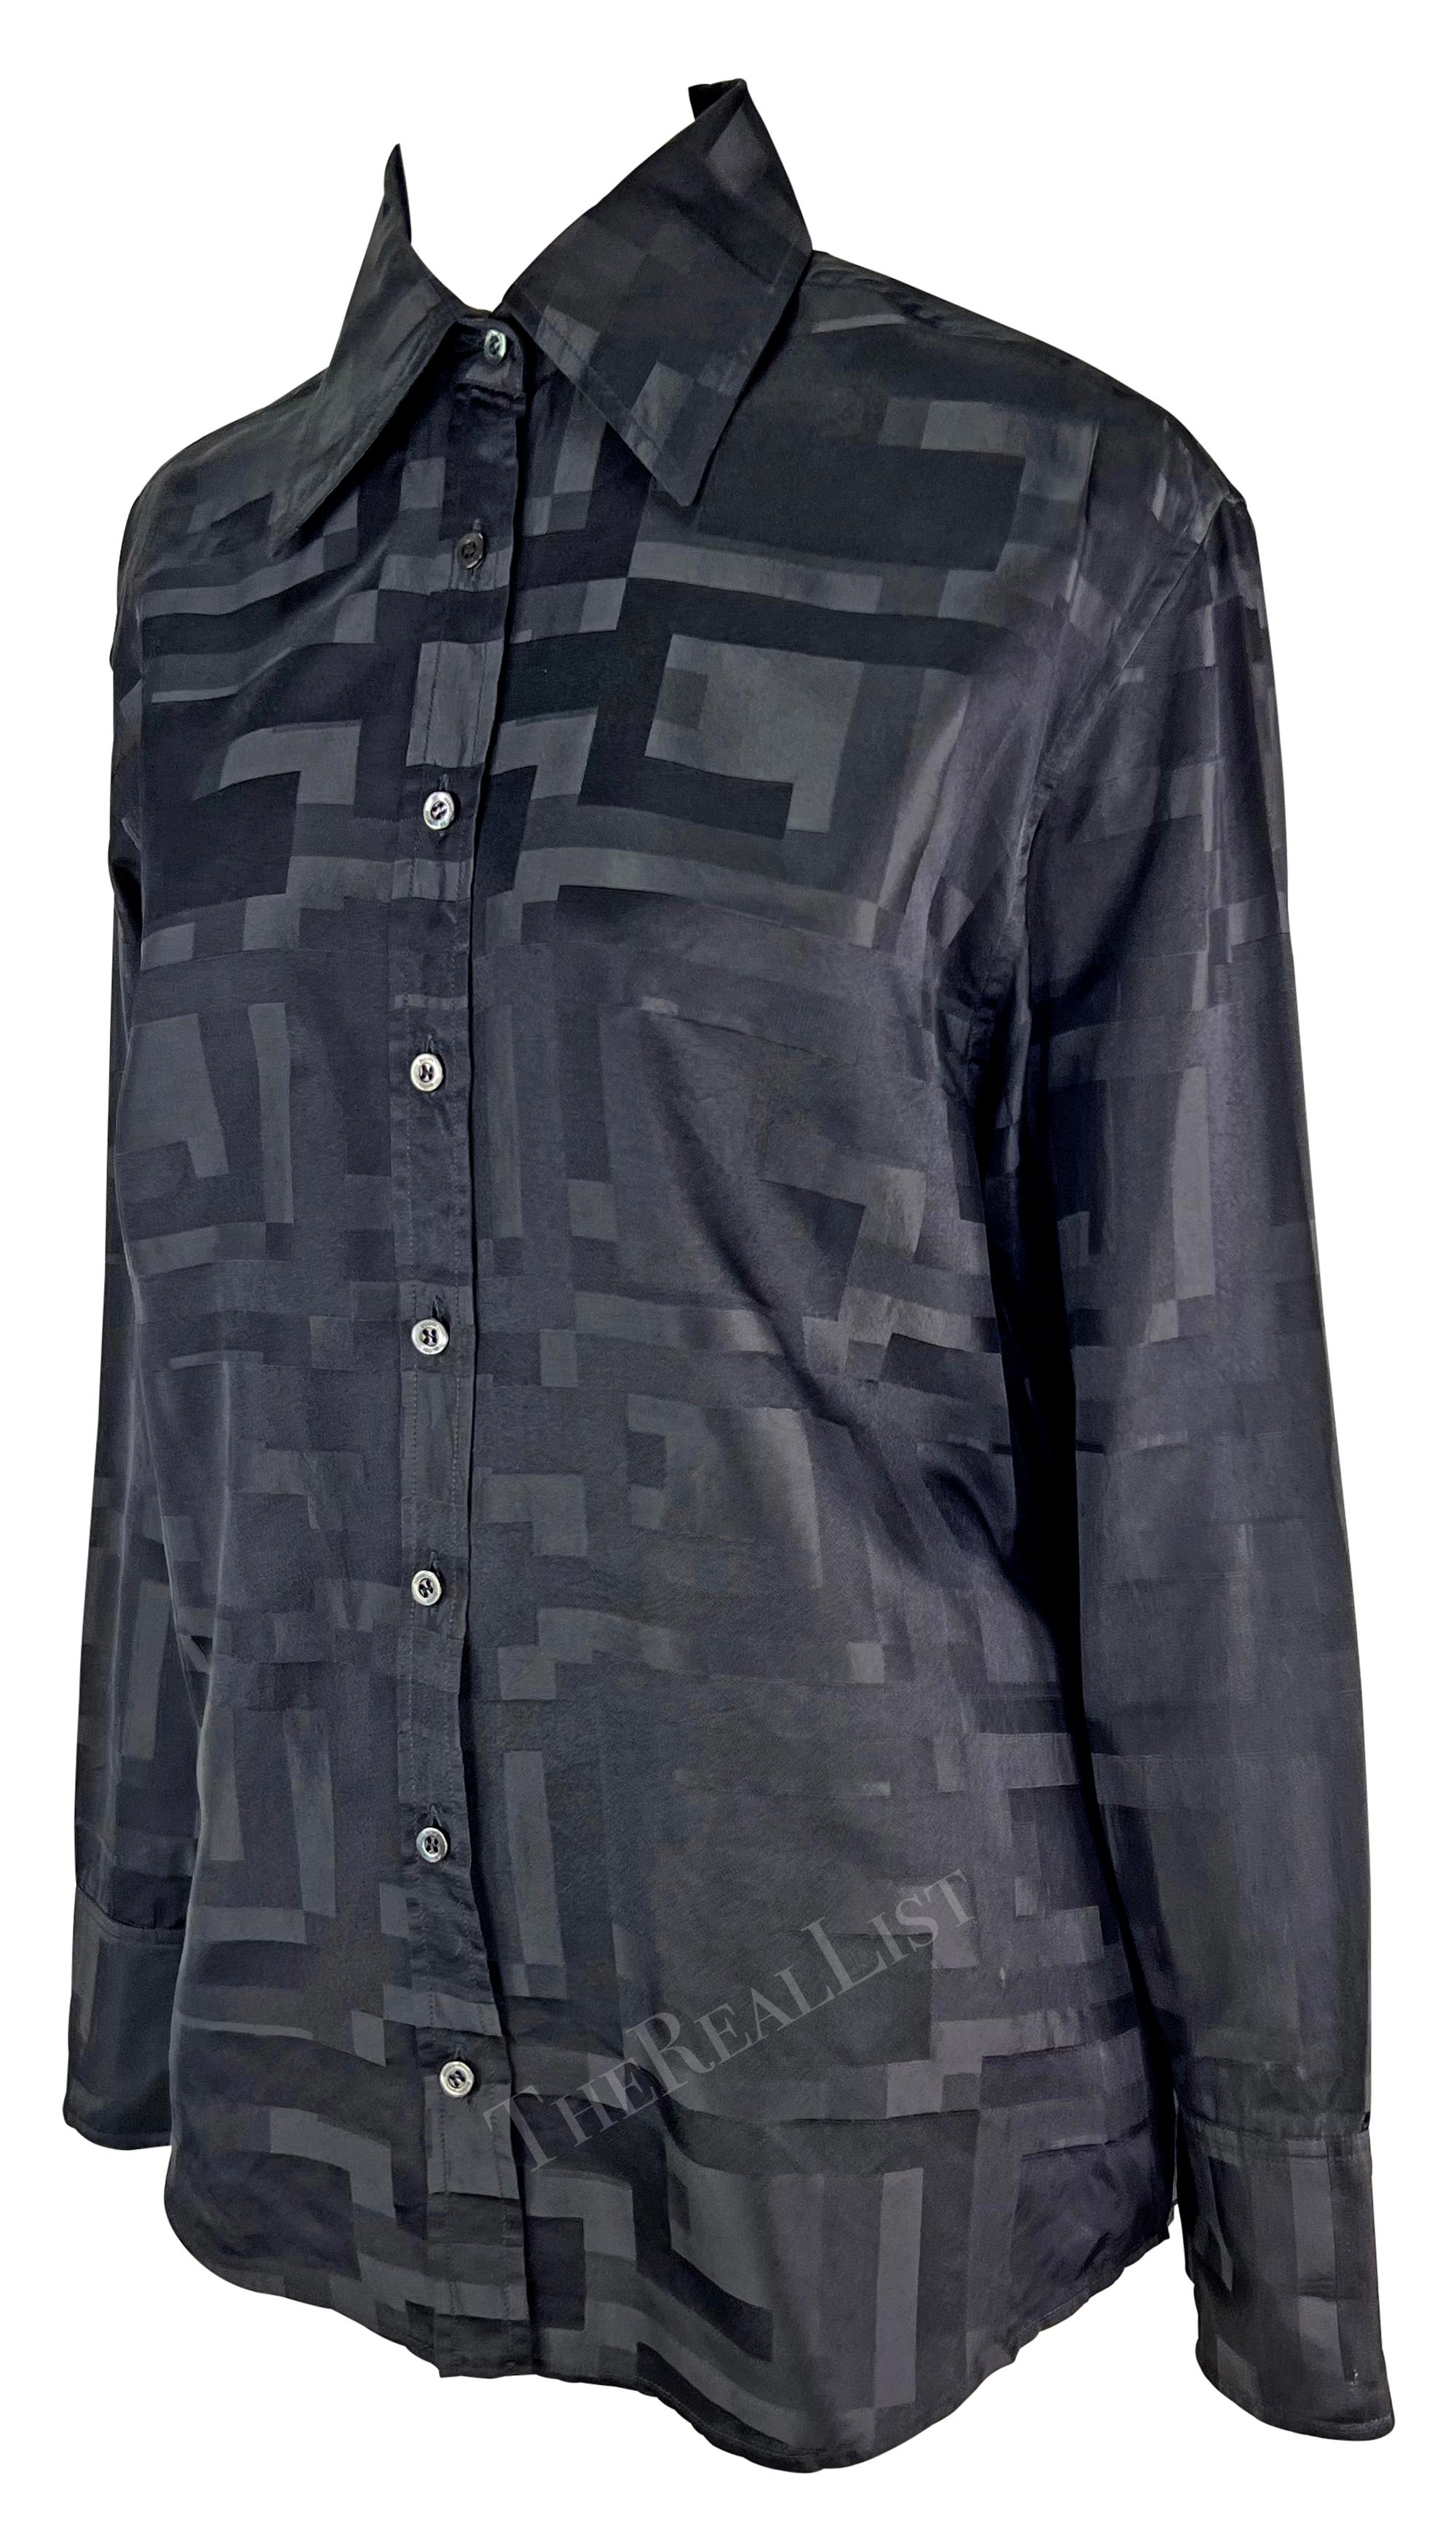 Présentation d'une chemise Gucci noire à boutons, dessinée par Tom Ford. Issue de la collection printemps/été 1998 de Gucci, cette chemise en soie mélangée est recouverte d'un motif abstrait carré 